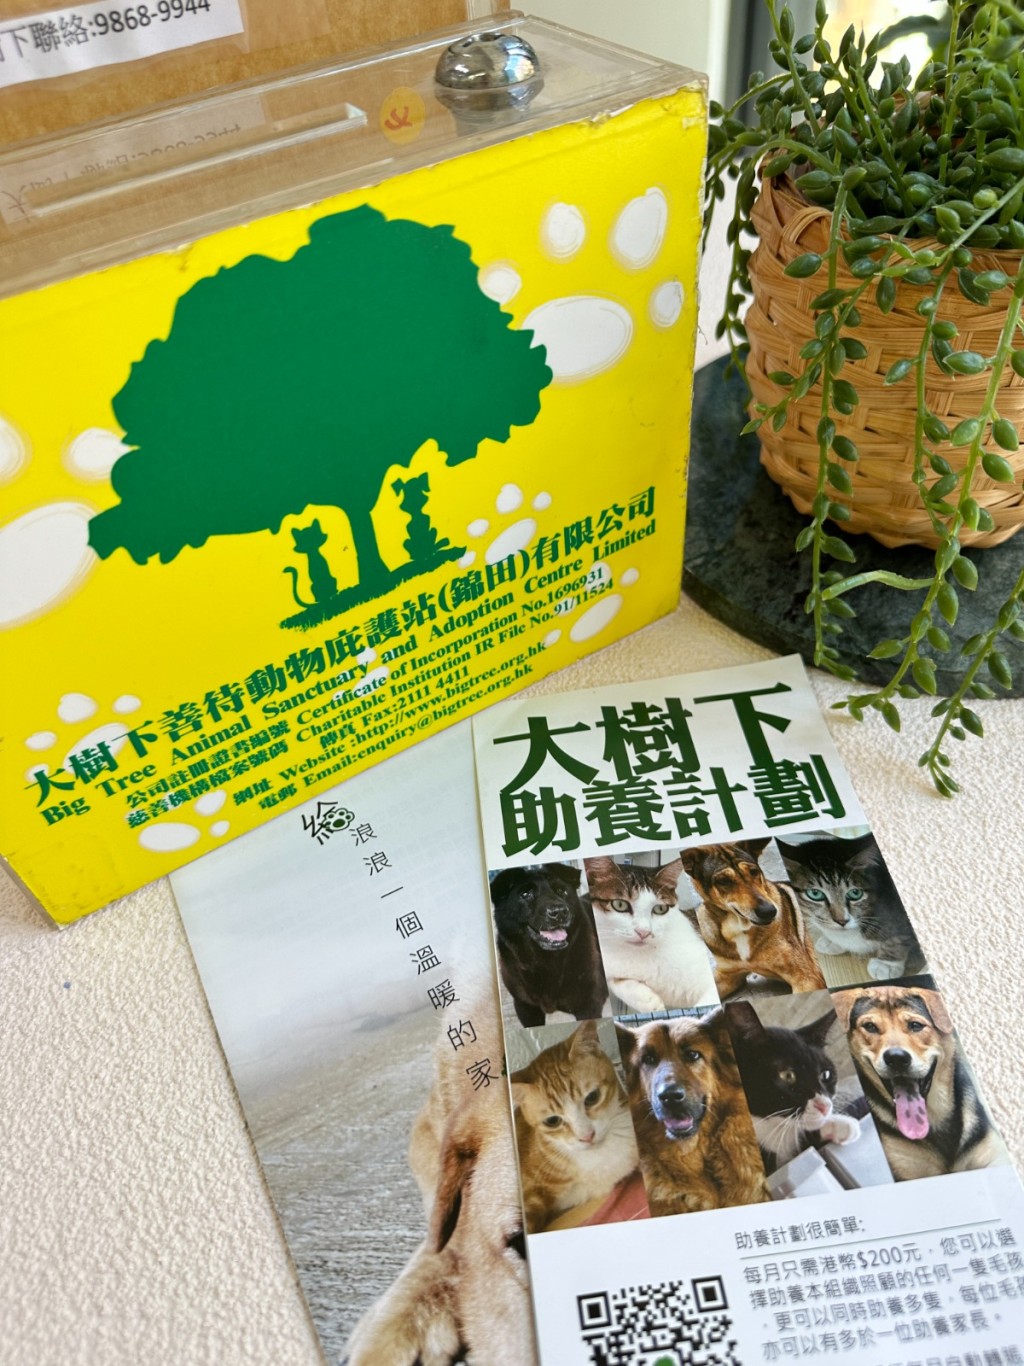 慈善街猫摄影展｜于展览期间，#bistrocity特设了一个慈善捐赠箱，供有兴趣帮助流浪猫狗的食客自由捐赠。